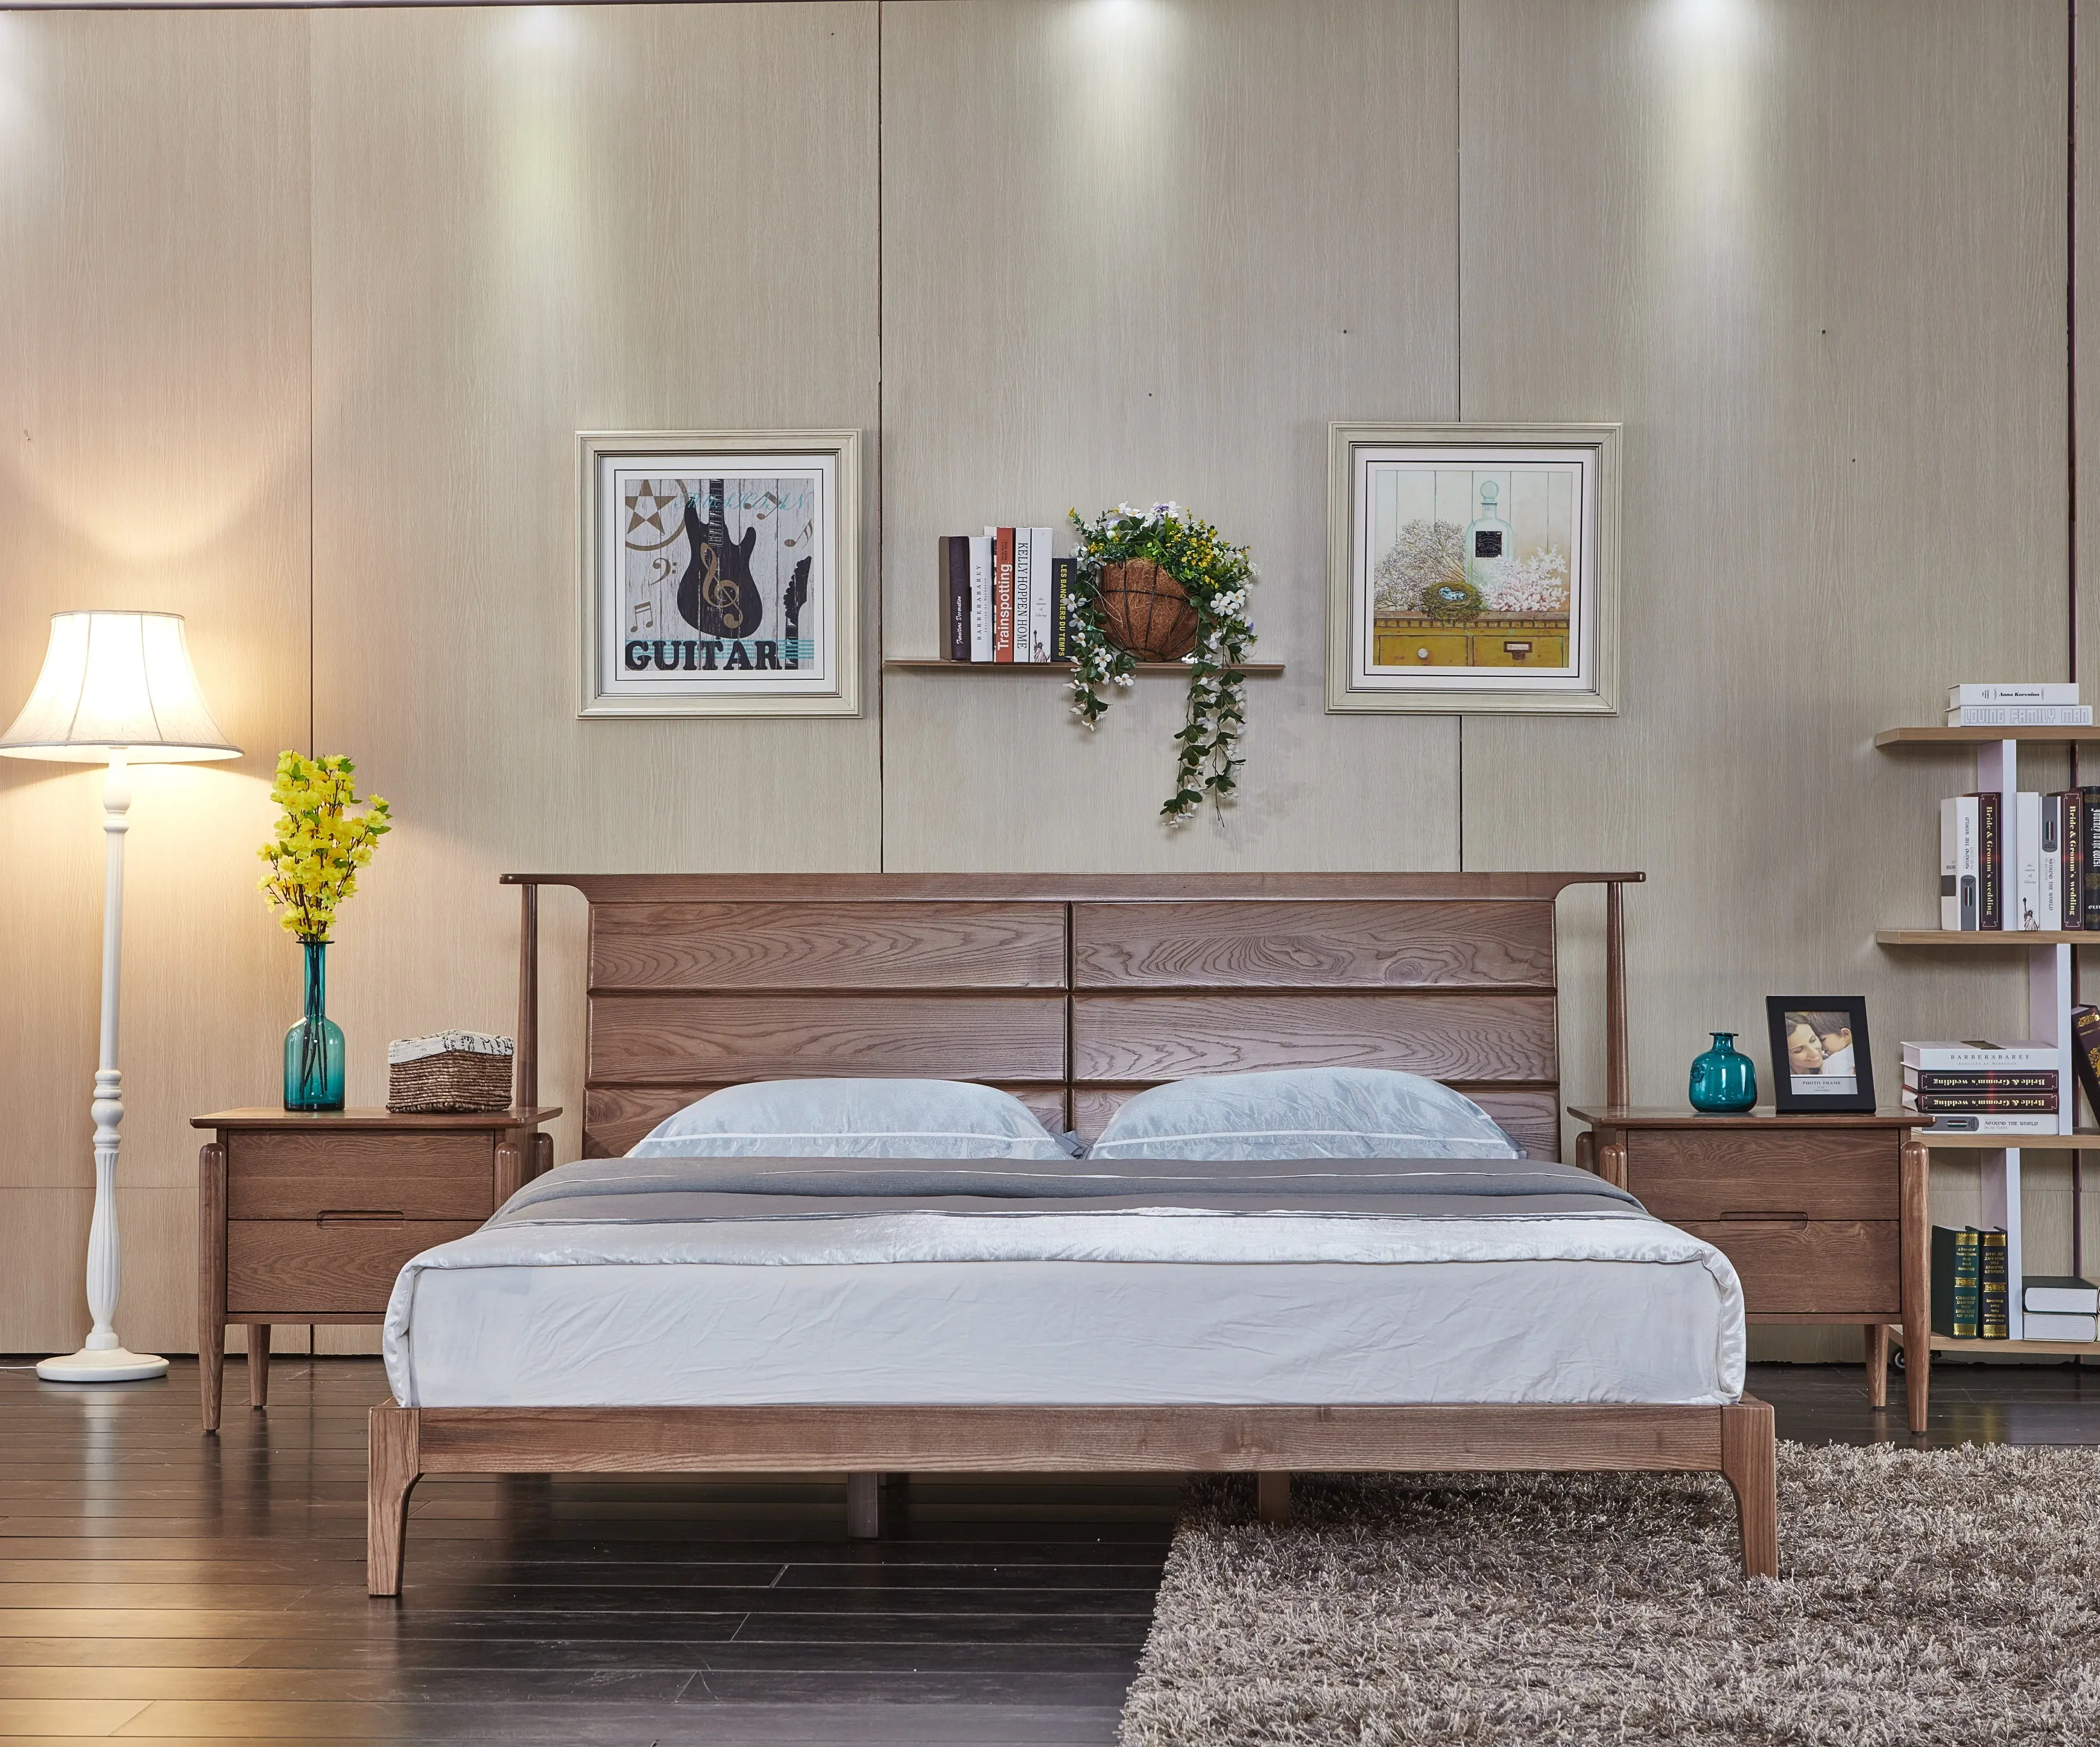 Diseños de cama doble de madera india de lujo y cajón lateral, muebles de habitación, cama de hotel y loft